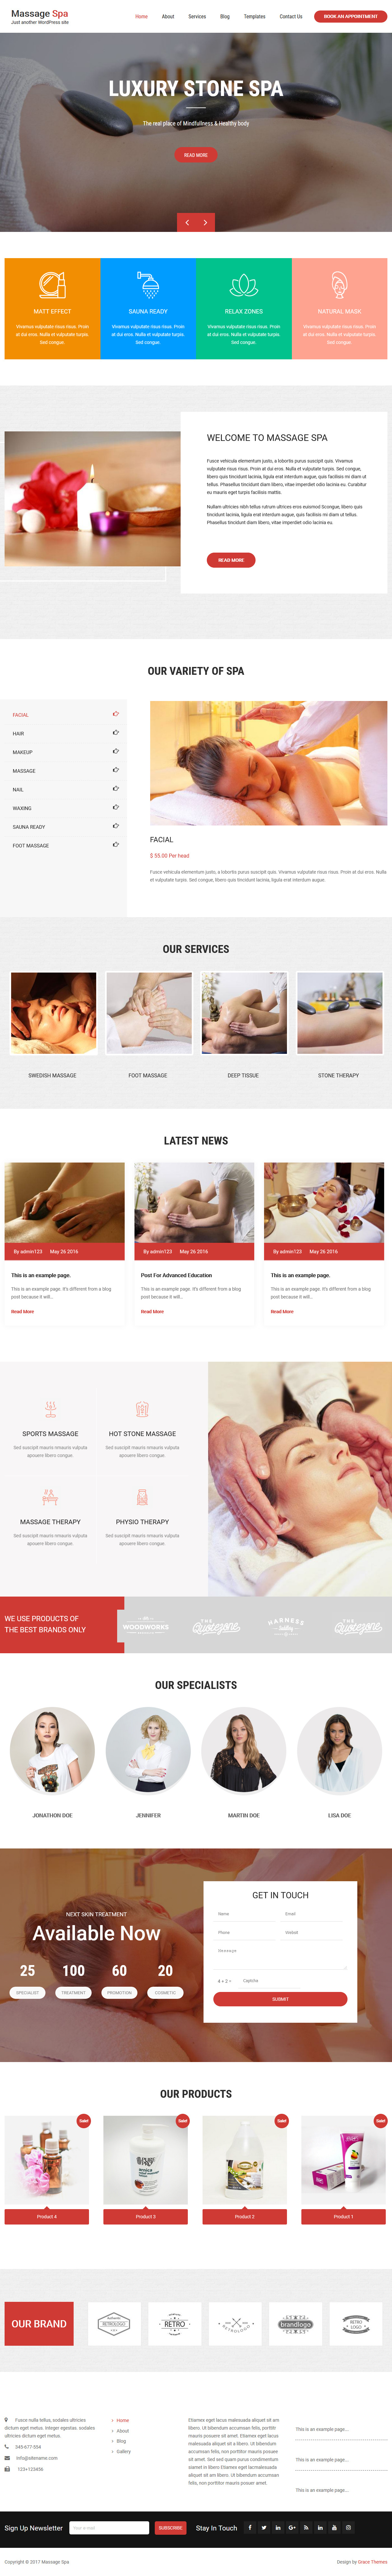 Spa de masajes: el mejor tema gratuito de spa y belleza de WordPress